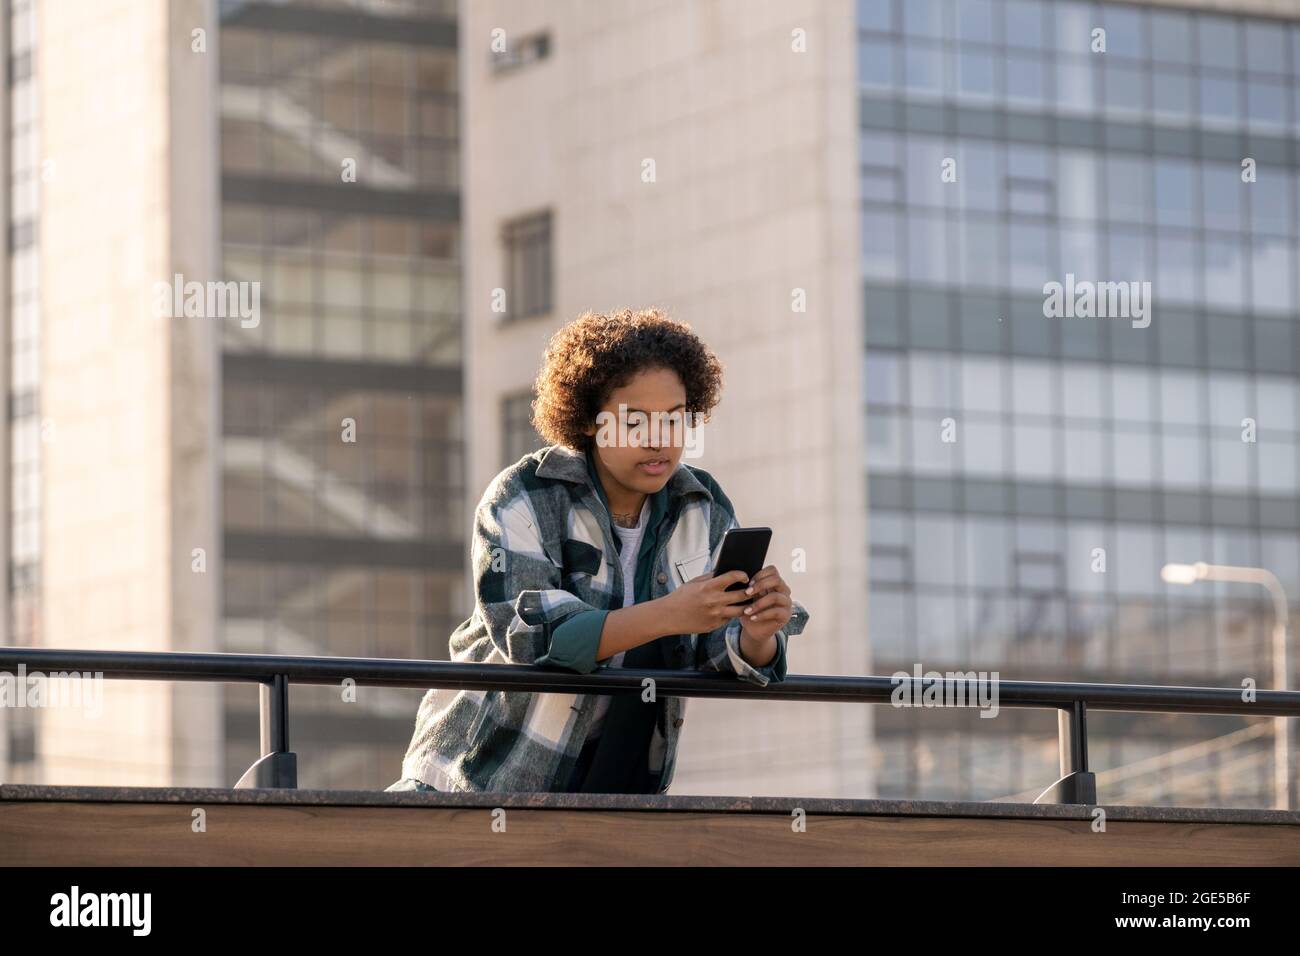 Weibliche Teenager scrollt im Smartphone, während sie sich gegen moderne Architektur über Geländer beugt Stockfoto